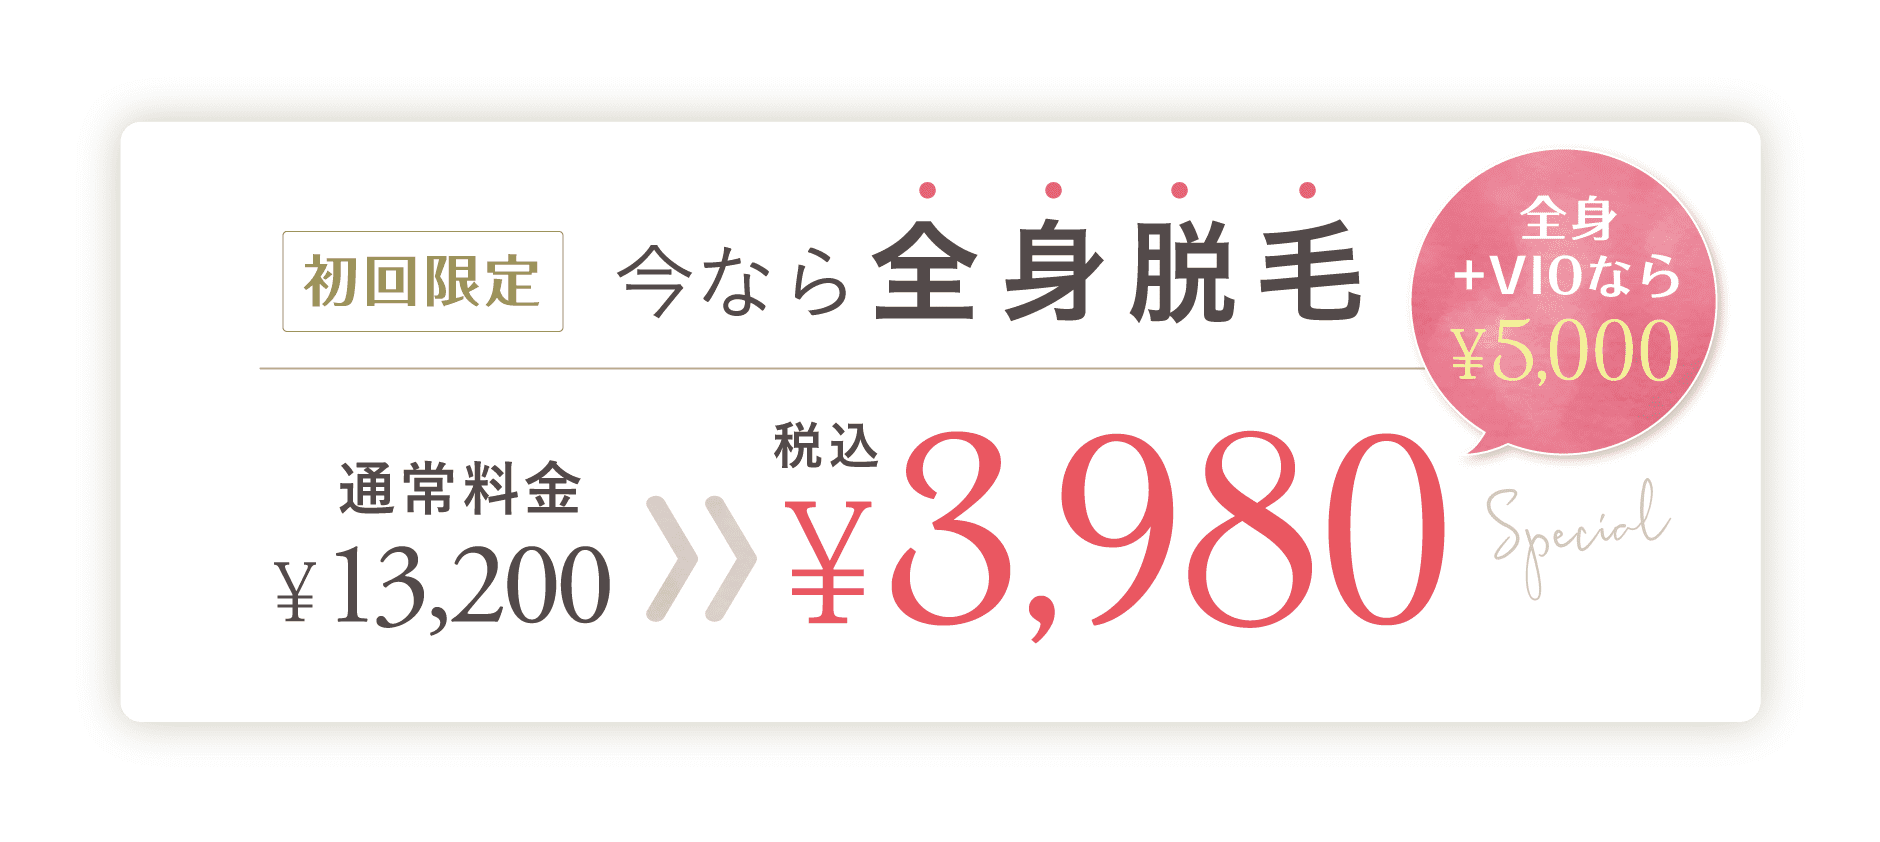 今なら全身脱毛が税込¥3,980(税込)全身＋VIOなら¥5,000(税込)